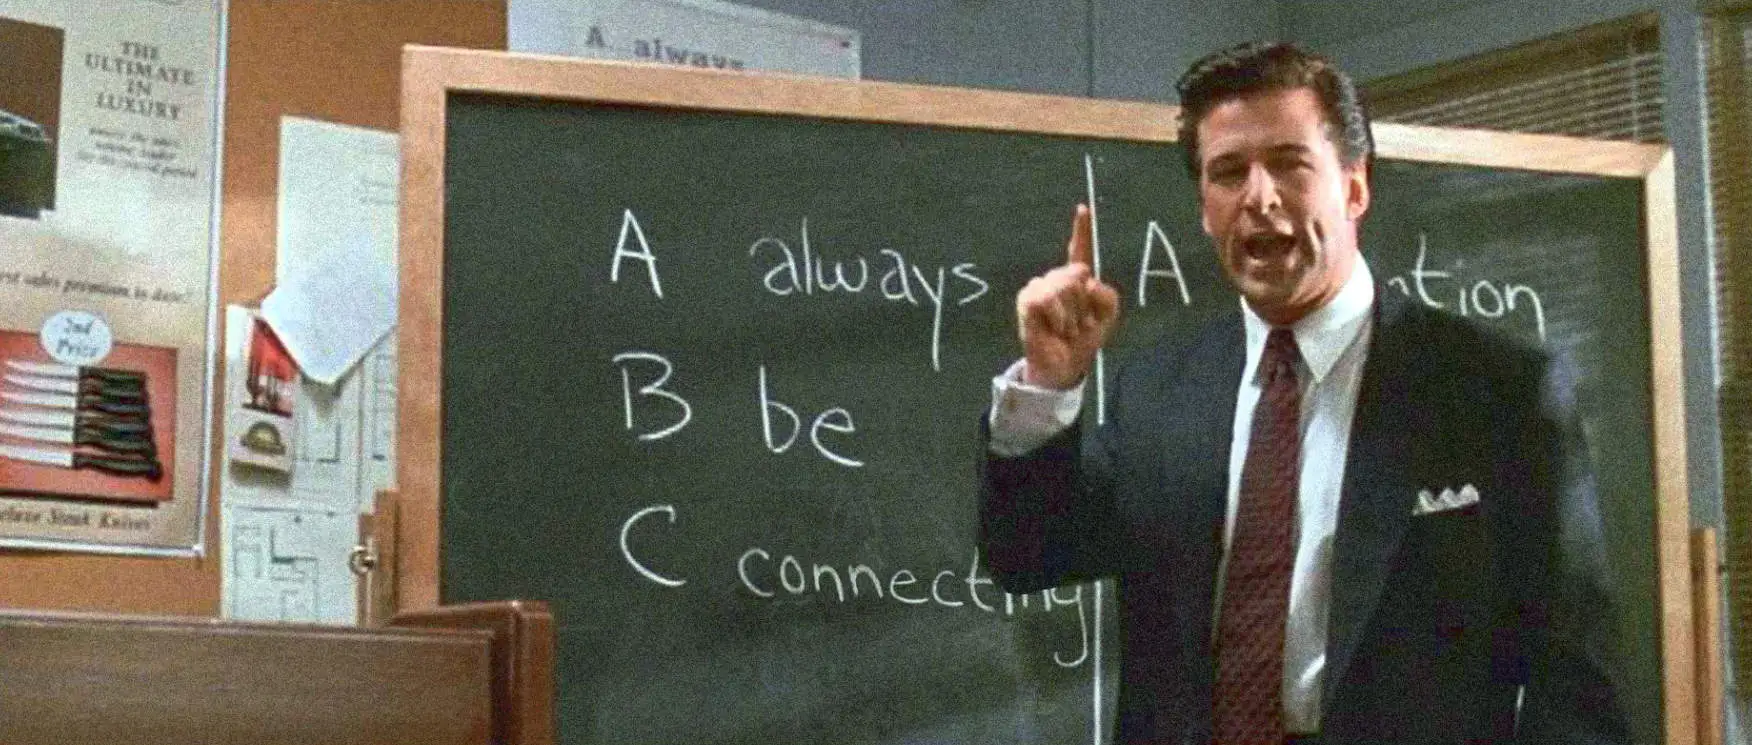 “Always Be Connecting” written on a blackboard